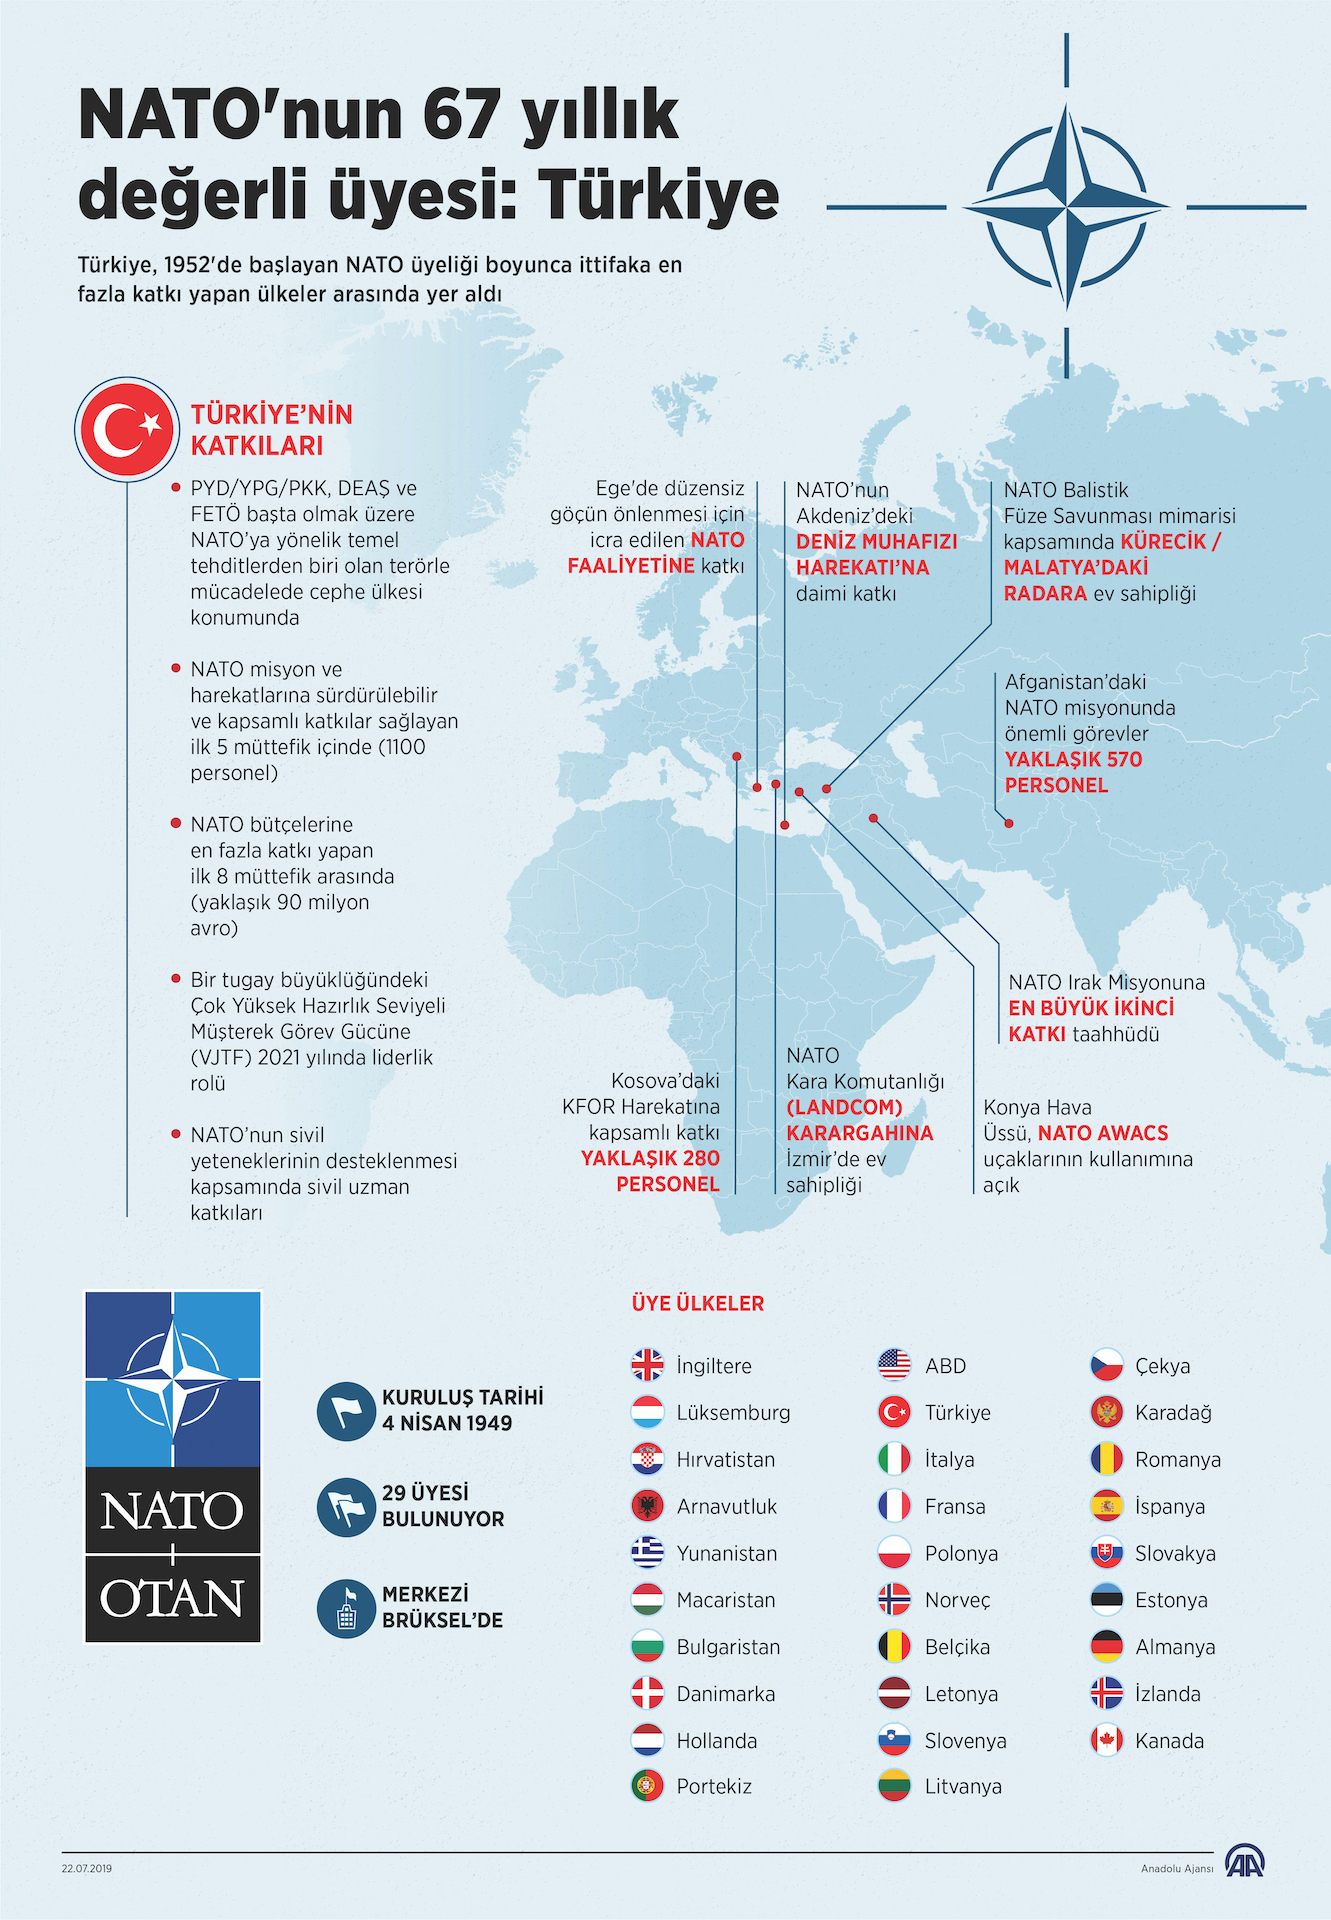 NATO'nun 67 Yıllık Değerli Üyesi: Türkiye